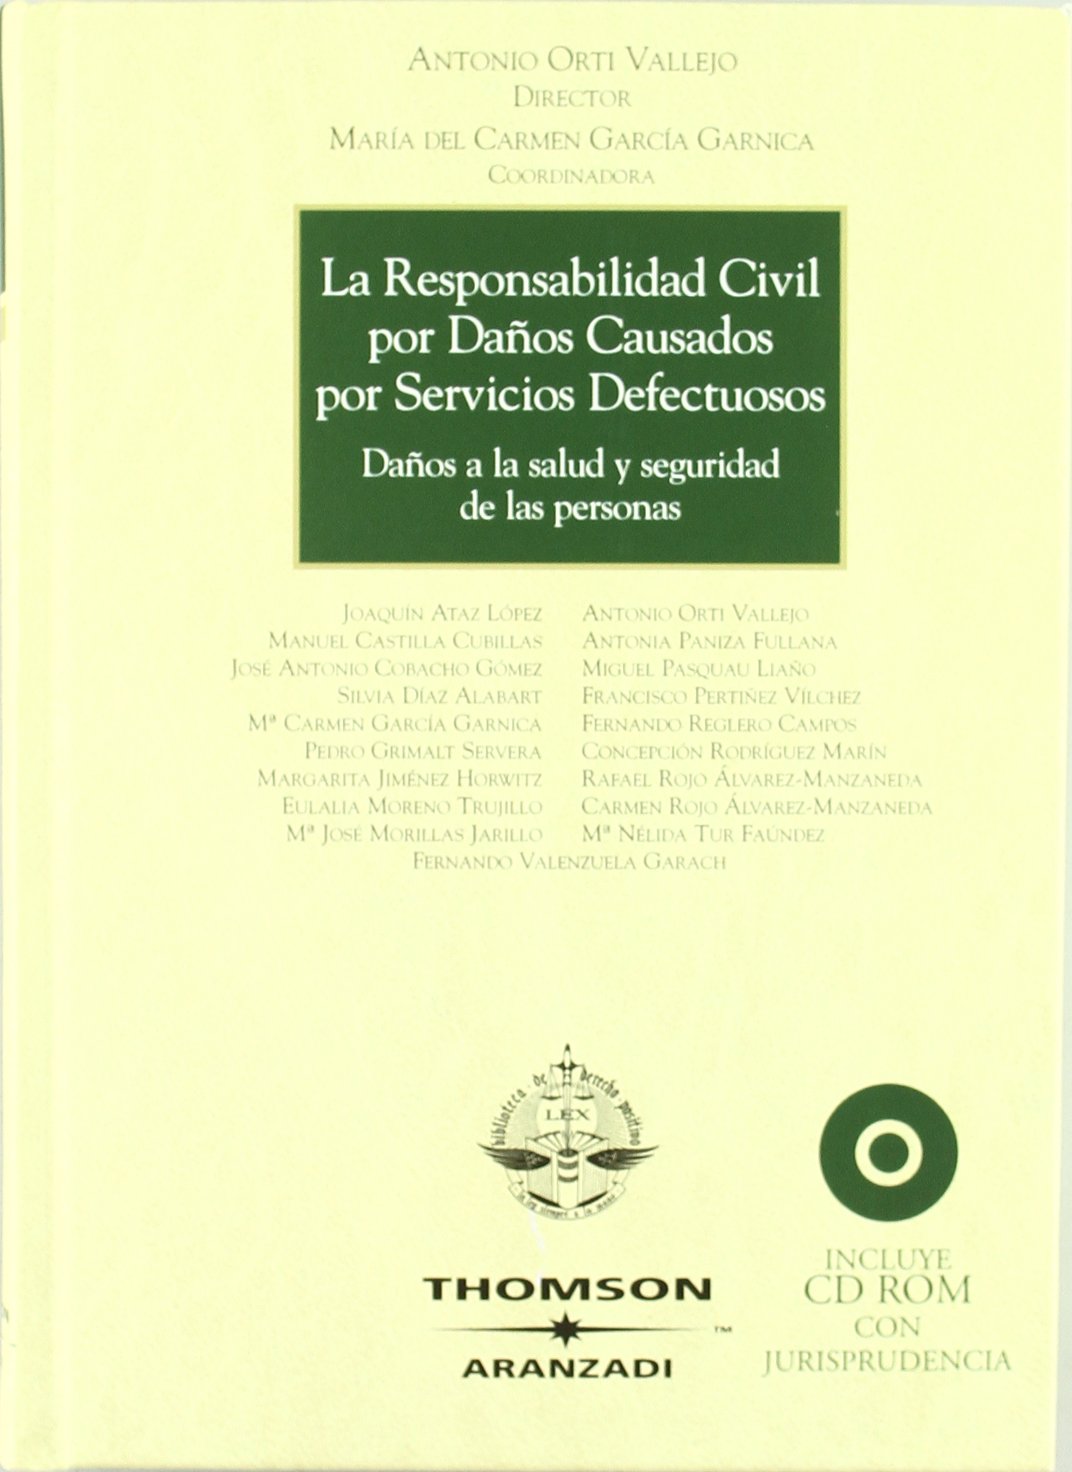 Imagen de portada del libro La responsabilidad civil por daños causados por servicios defectuosos